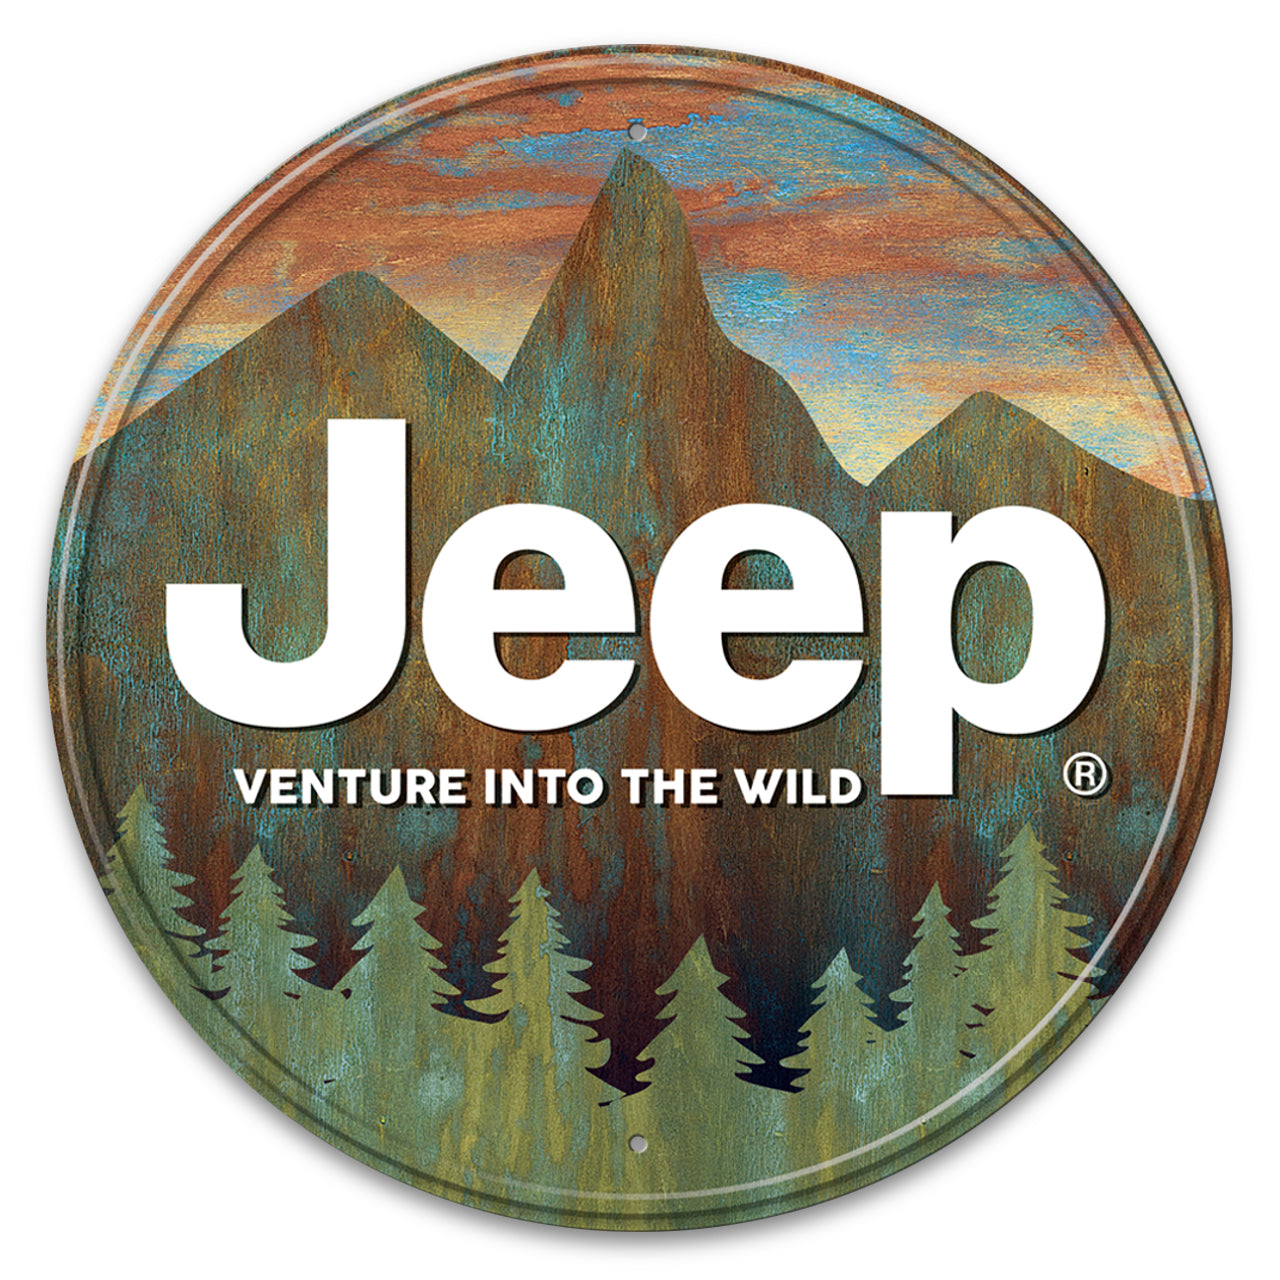 Jeep Venture Round Sign